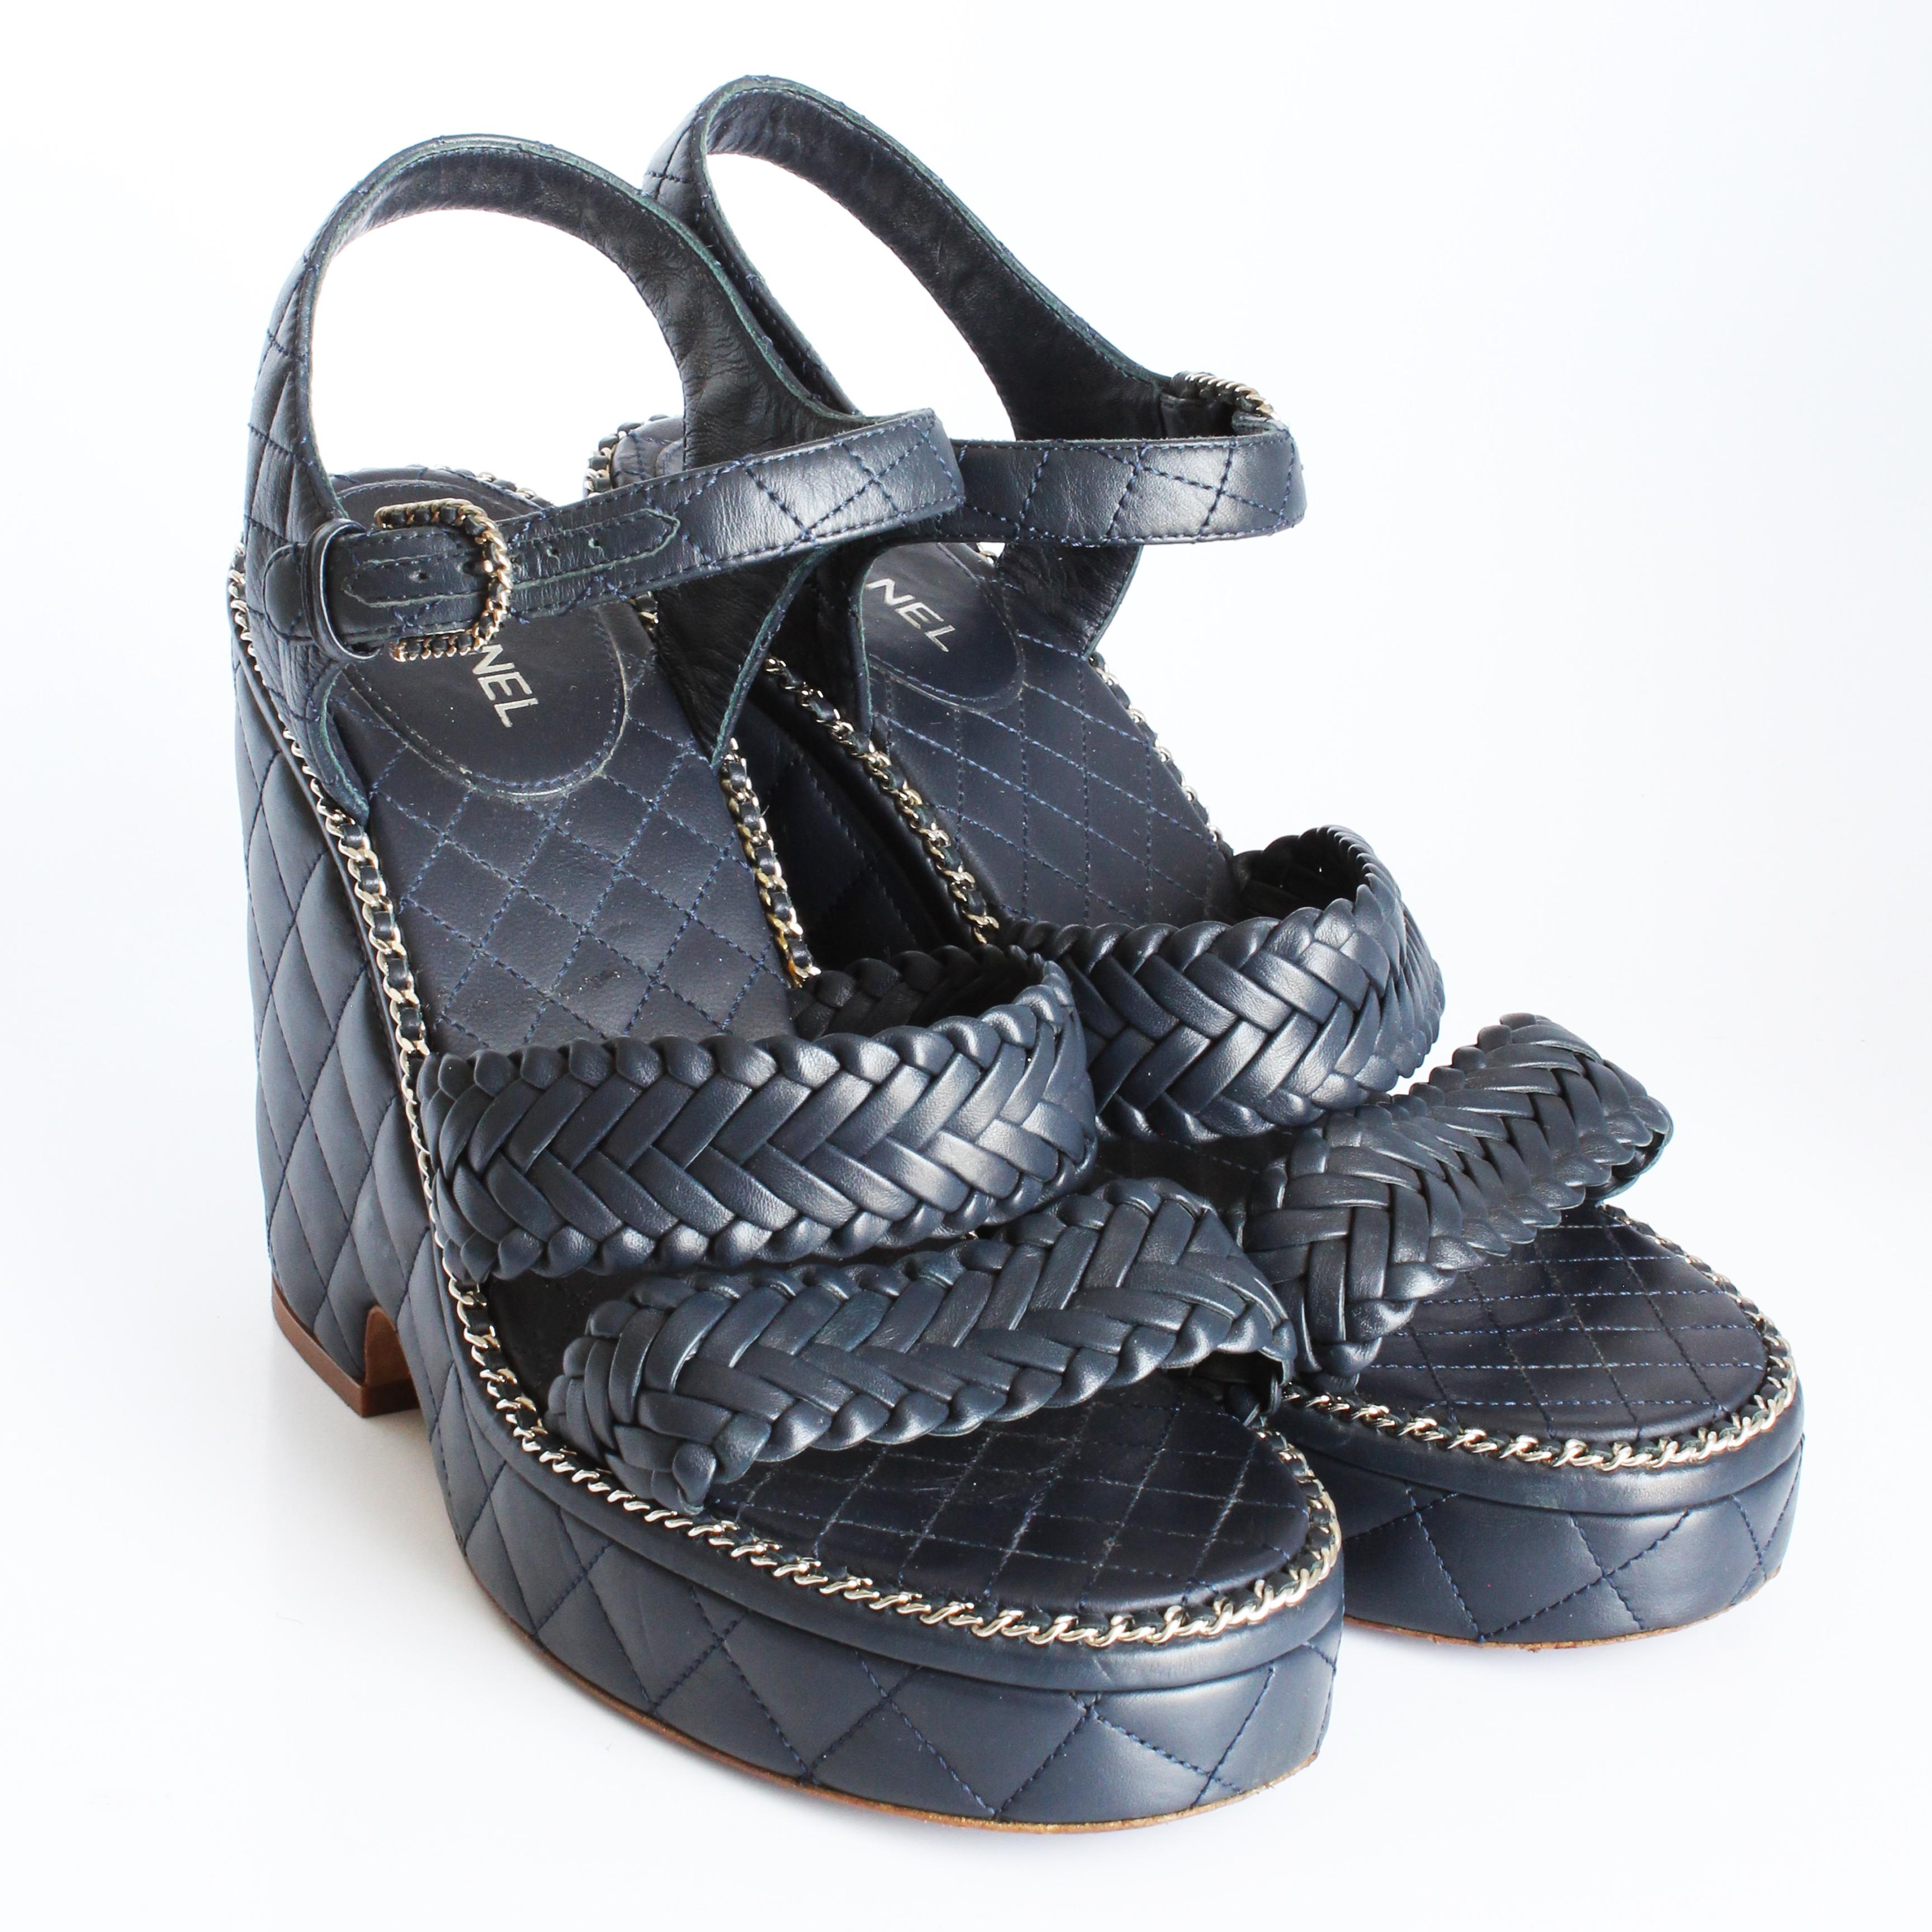 Chanel Quilted Calfskin Chain Around Sandals Platform Heels Navy 2015 Sz 40.5 In Good Condition For Sale In Port Saint Lucie, FL